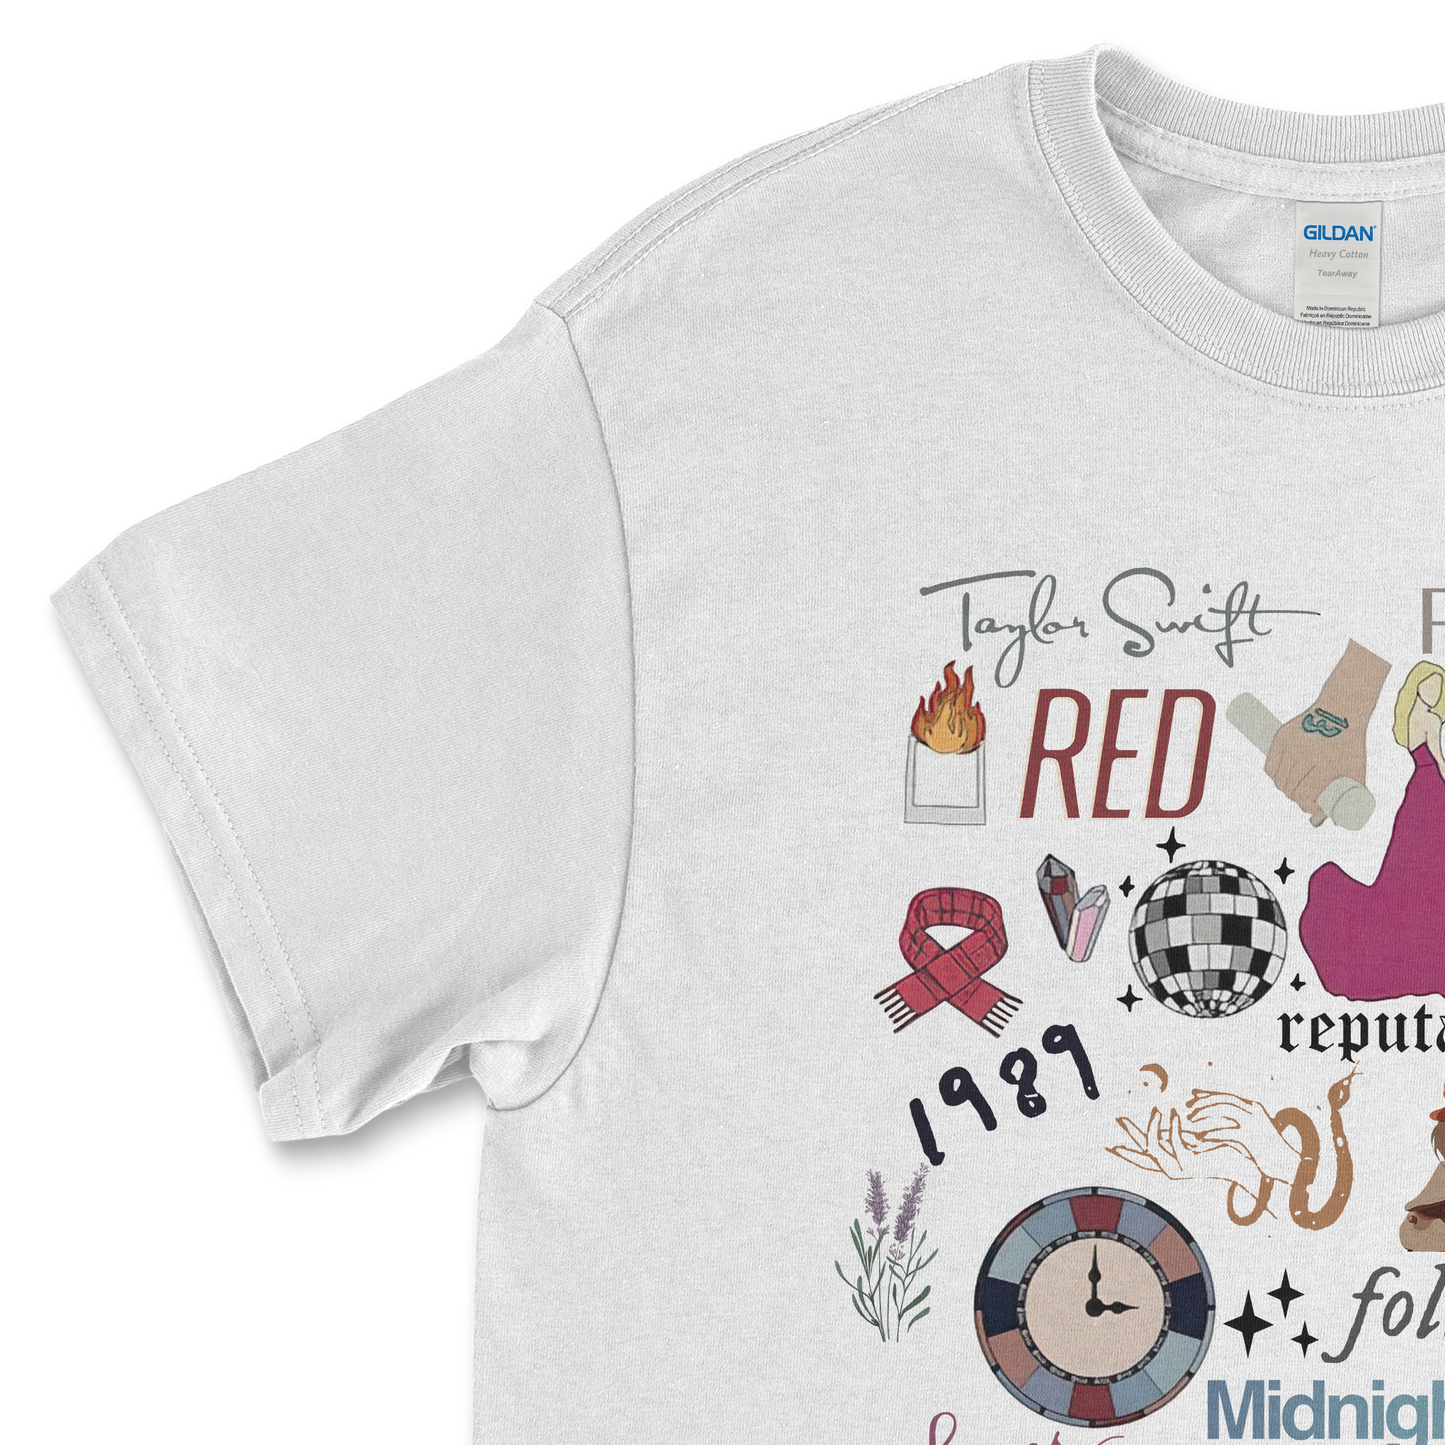 The Eras Tour Albums Symbols Taylor Swift T-Shirt